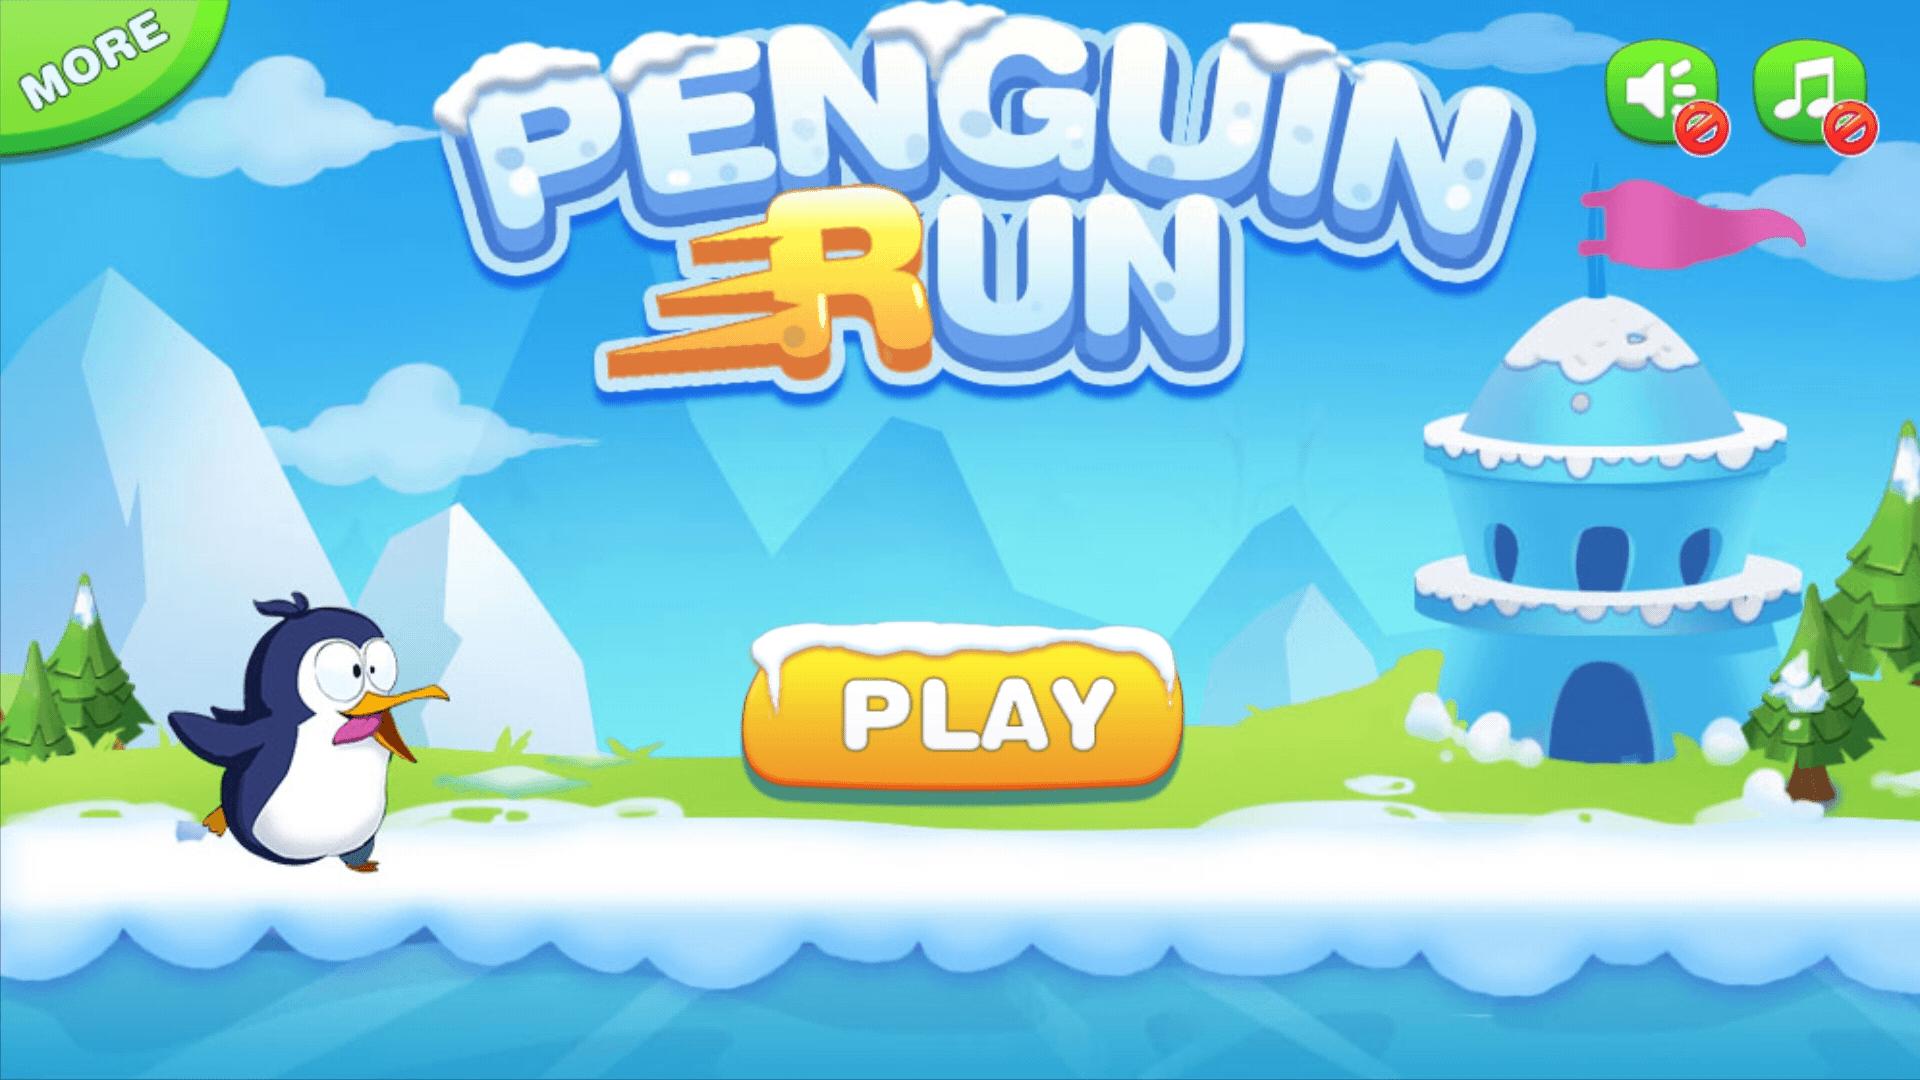 Игра пингвина битой. Penguin Run игра. Игра Пингвин Android. Игры с пингвинами для детей. Пингвин бежит.